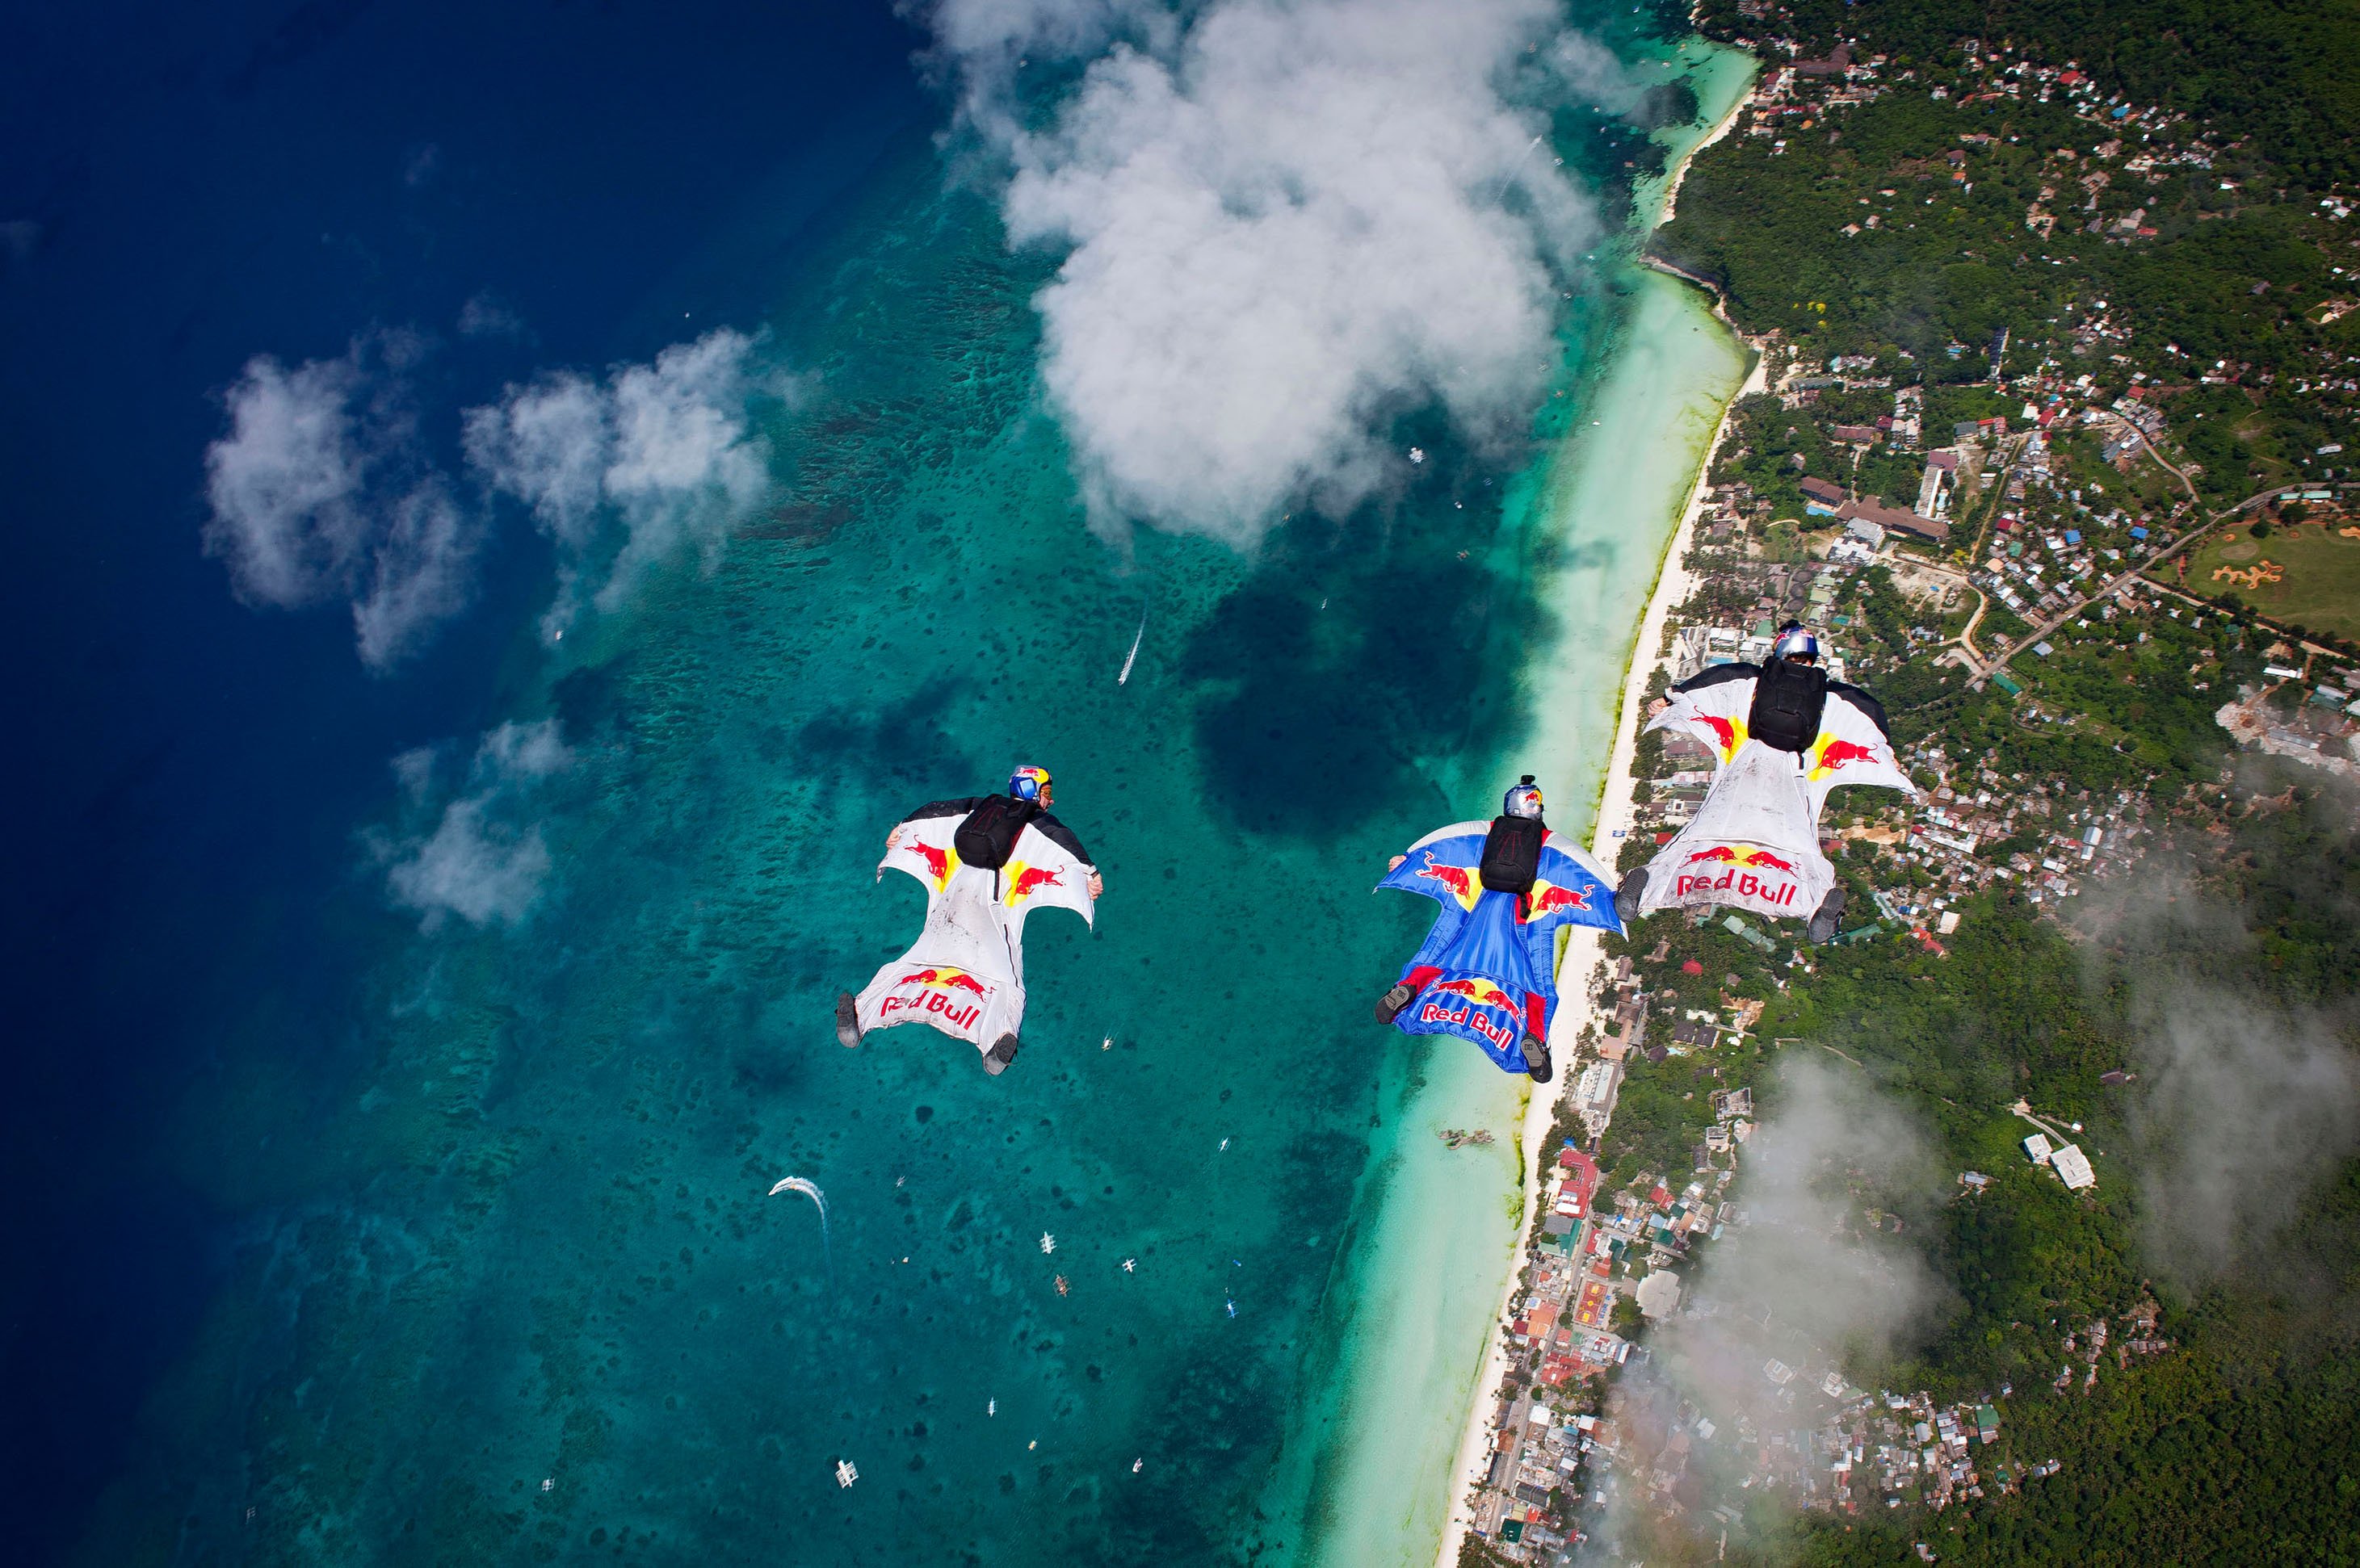 wingsuit, Parachute, Flying, Fly, Flight, Extreme, Birdman, Diving, Skydive, Skydiving, People, 1wingsuit, Suit, People Wallpaper